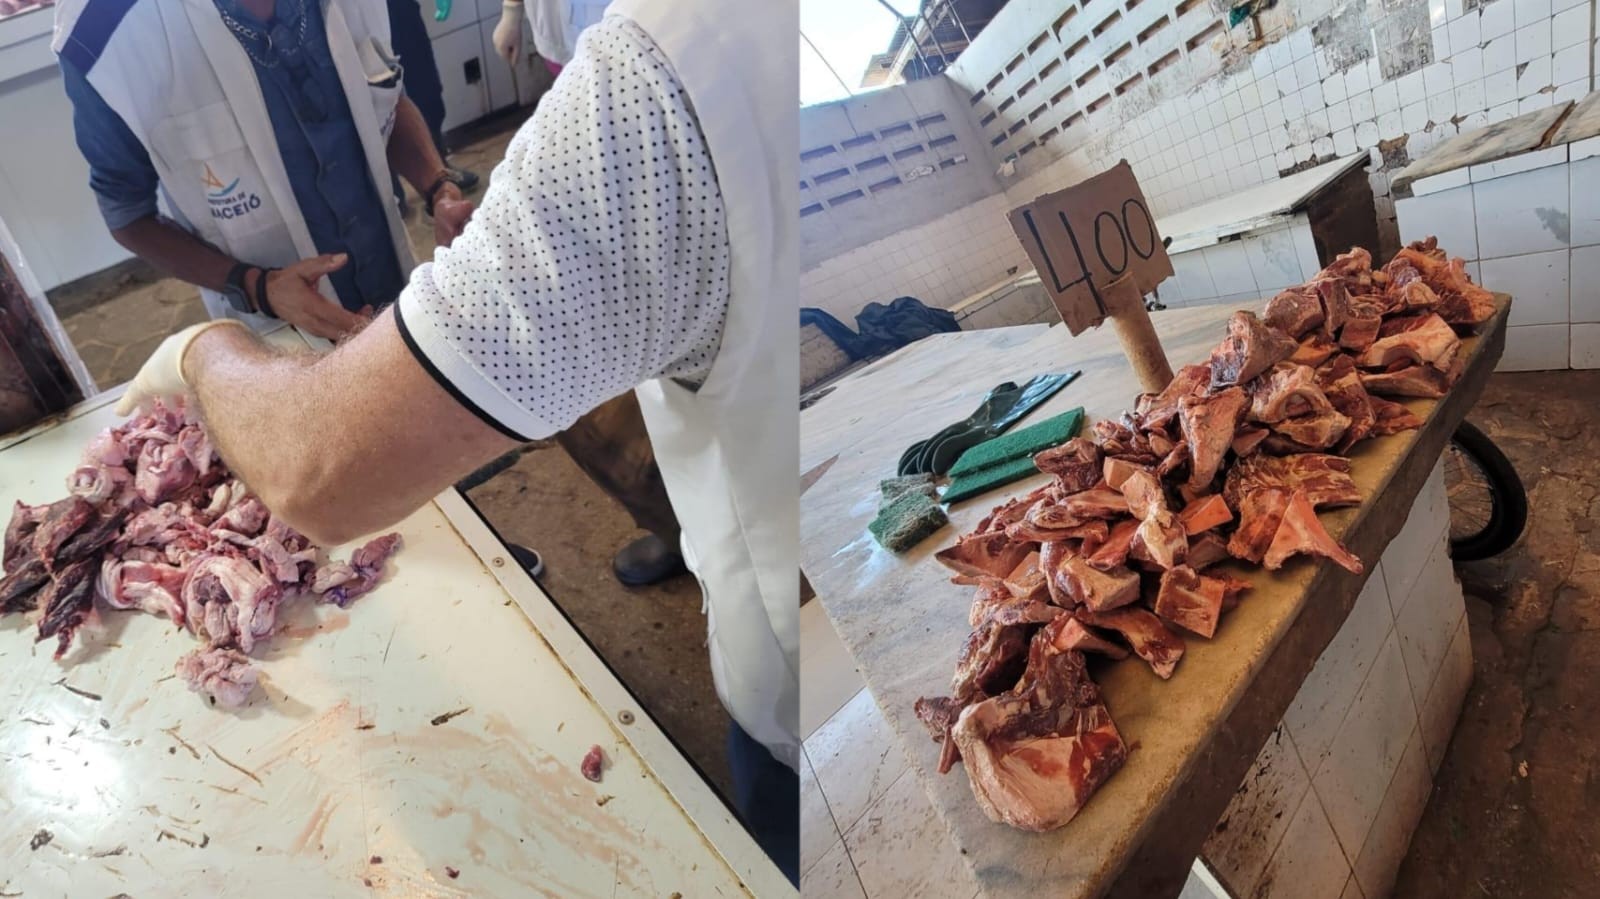 
Vigilância Sanitária apreende 75 kg de carnes estragadas no Mercado da Produção, em Maceió